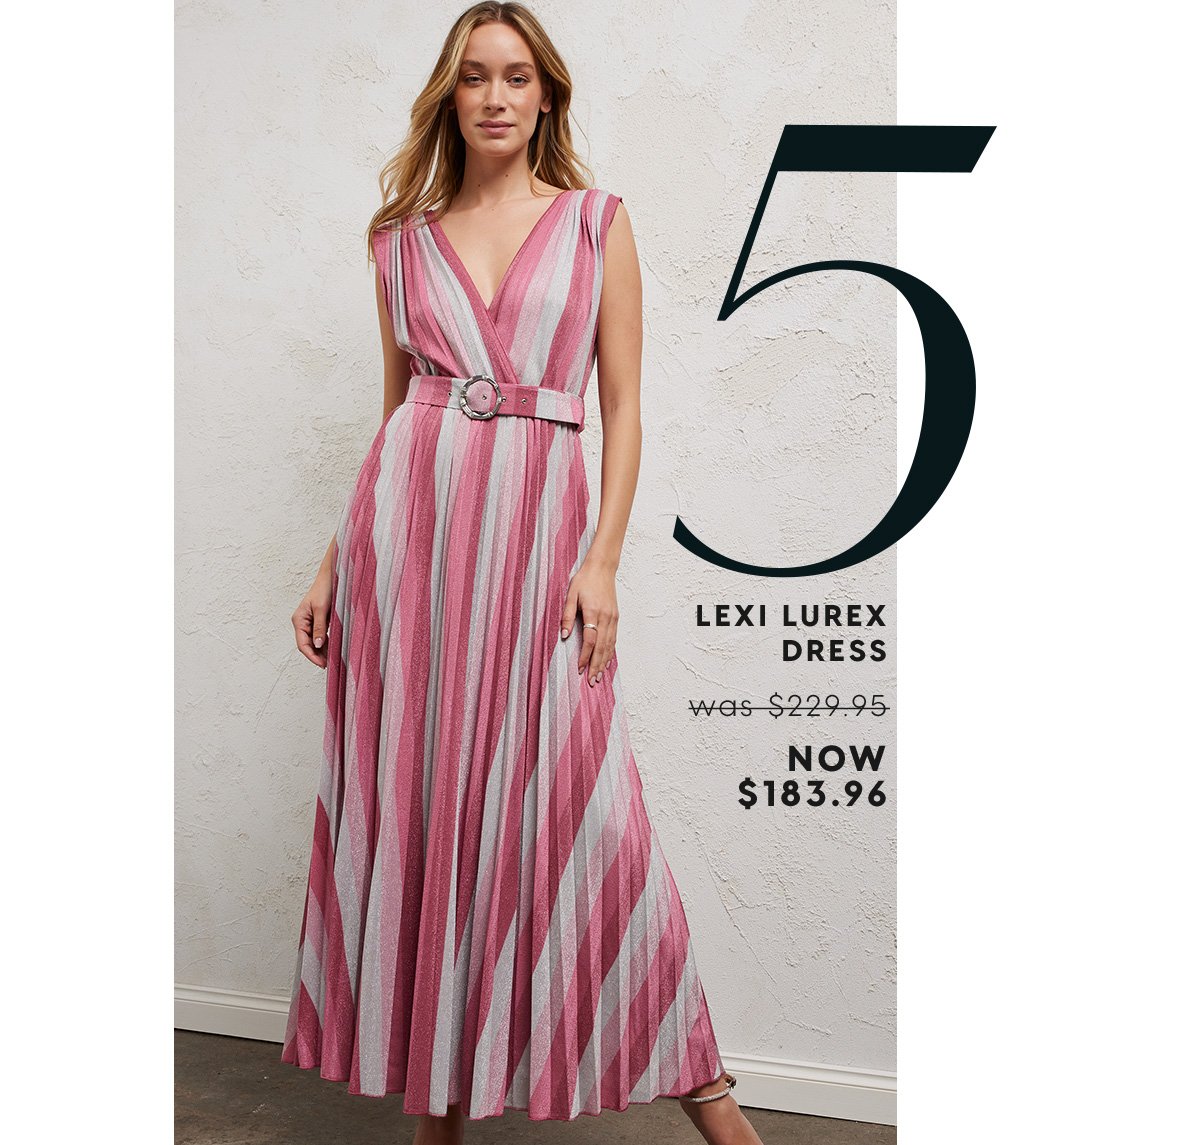 5. Lexi Lurex Dress